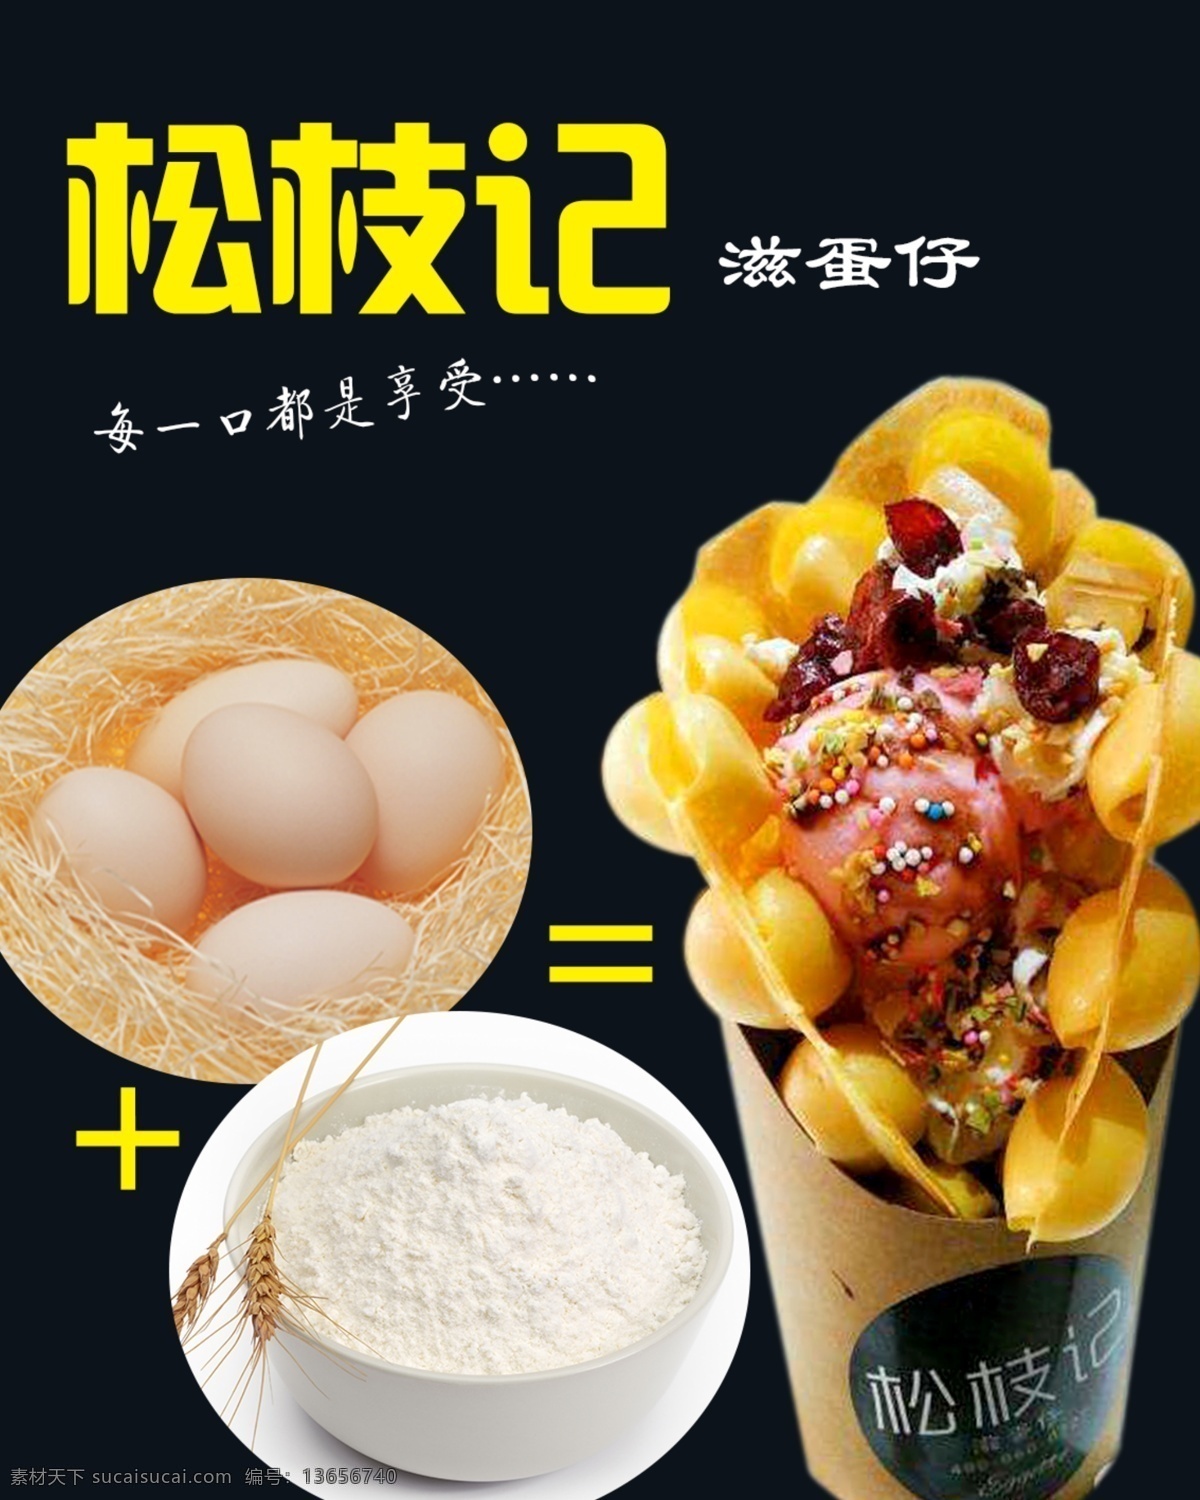 松枝记 海报 香港小吃 冰激凌 鸡蛋饼 滋蛋仔 星空 美食 甜品 招贴设计